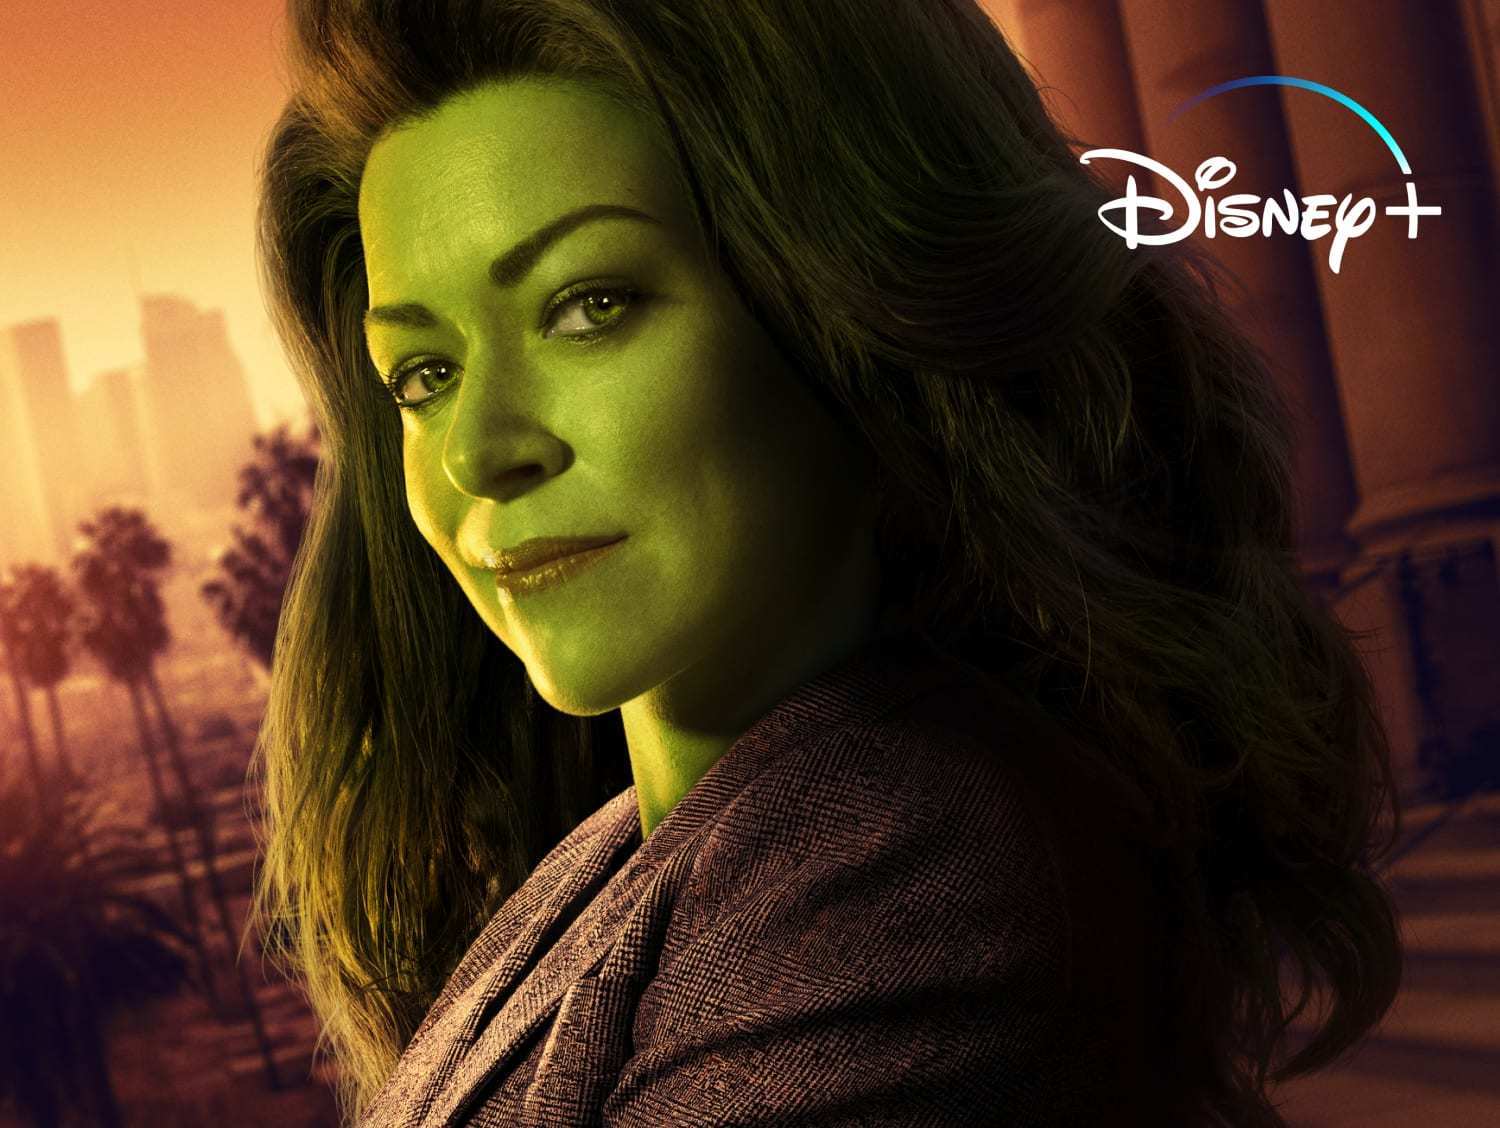 She-Hulk terá Josh Segarra e Tatiana Maslany no elenco